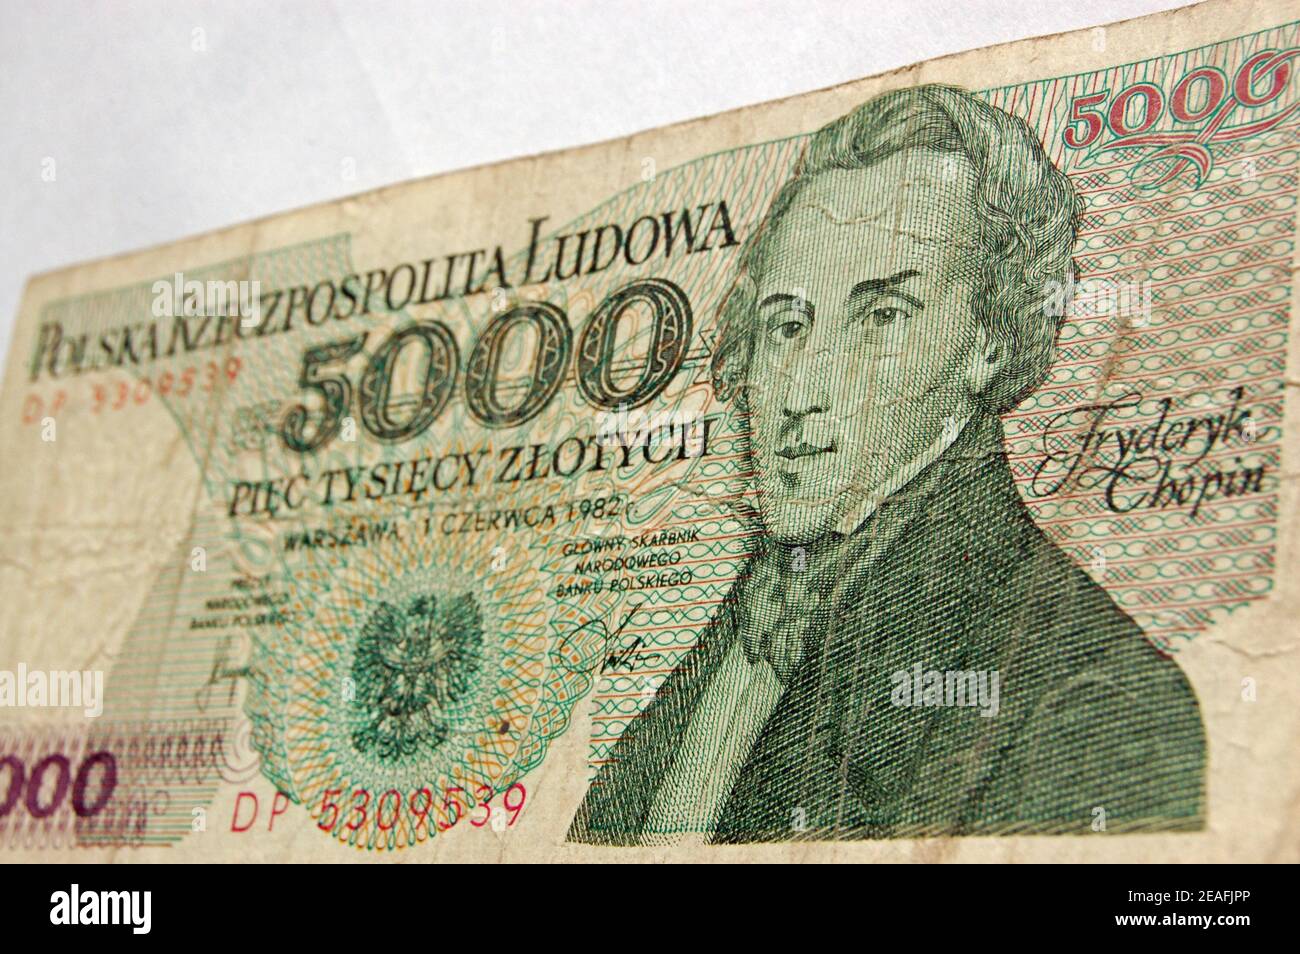 Vista di una banconota da 5000 Zloty polacca che mostra il compositore Chopin. Foto Stock